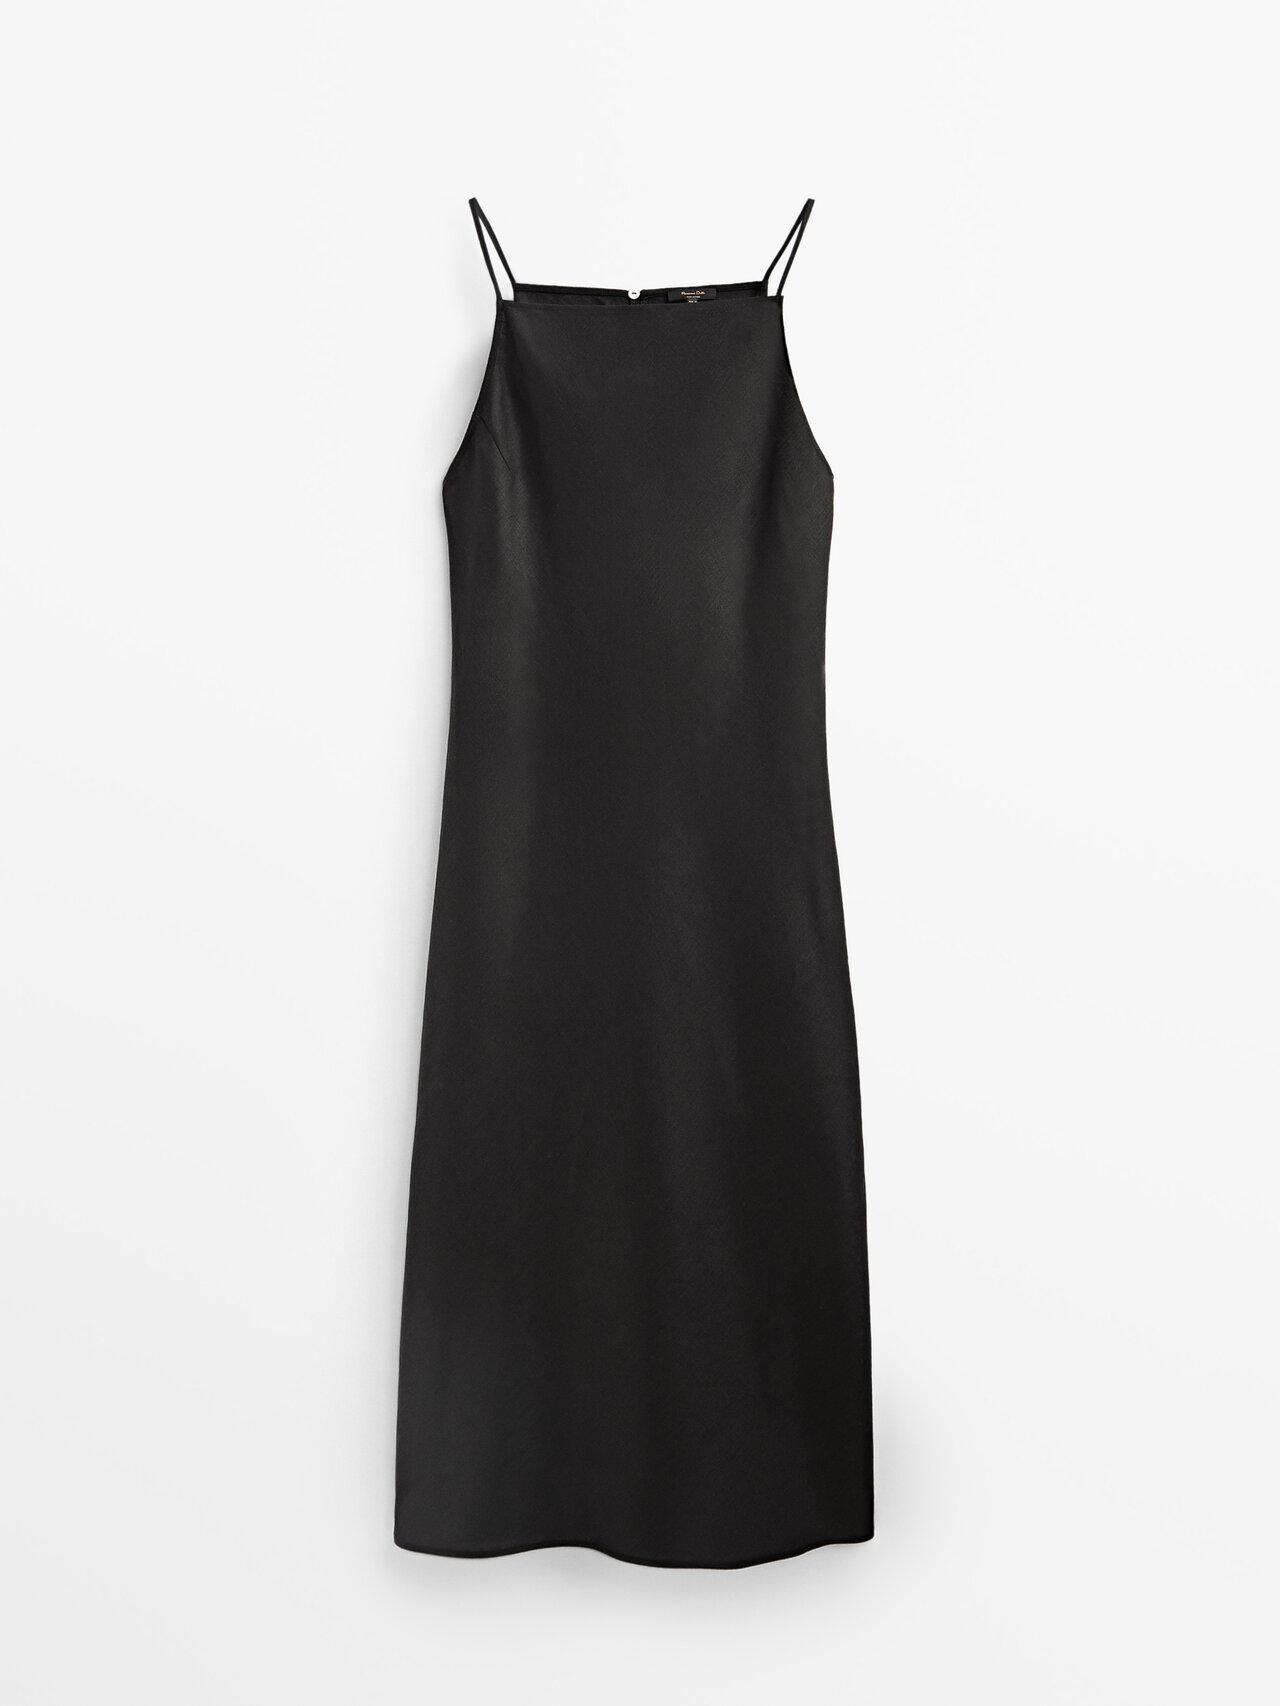 MASSIMO DUTTI Long Linen Halter Dress in Black | Lyst